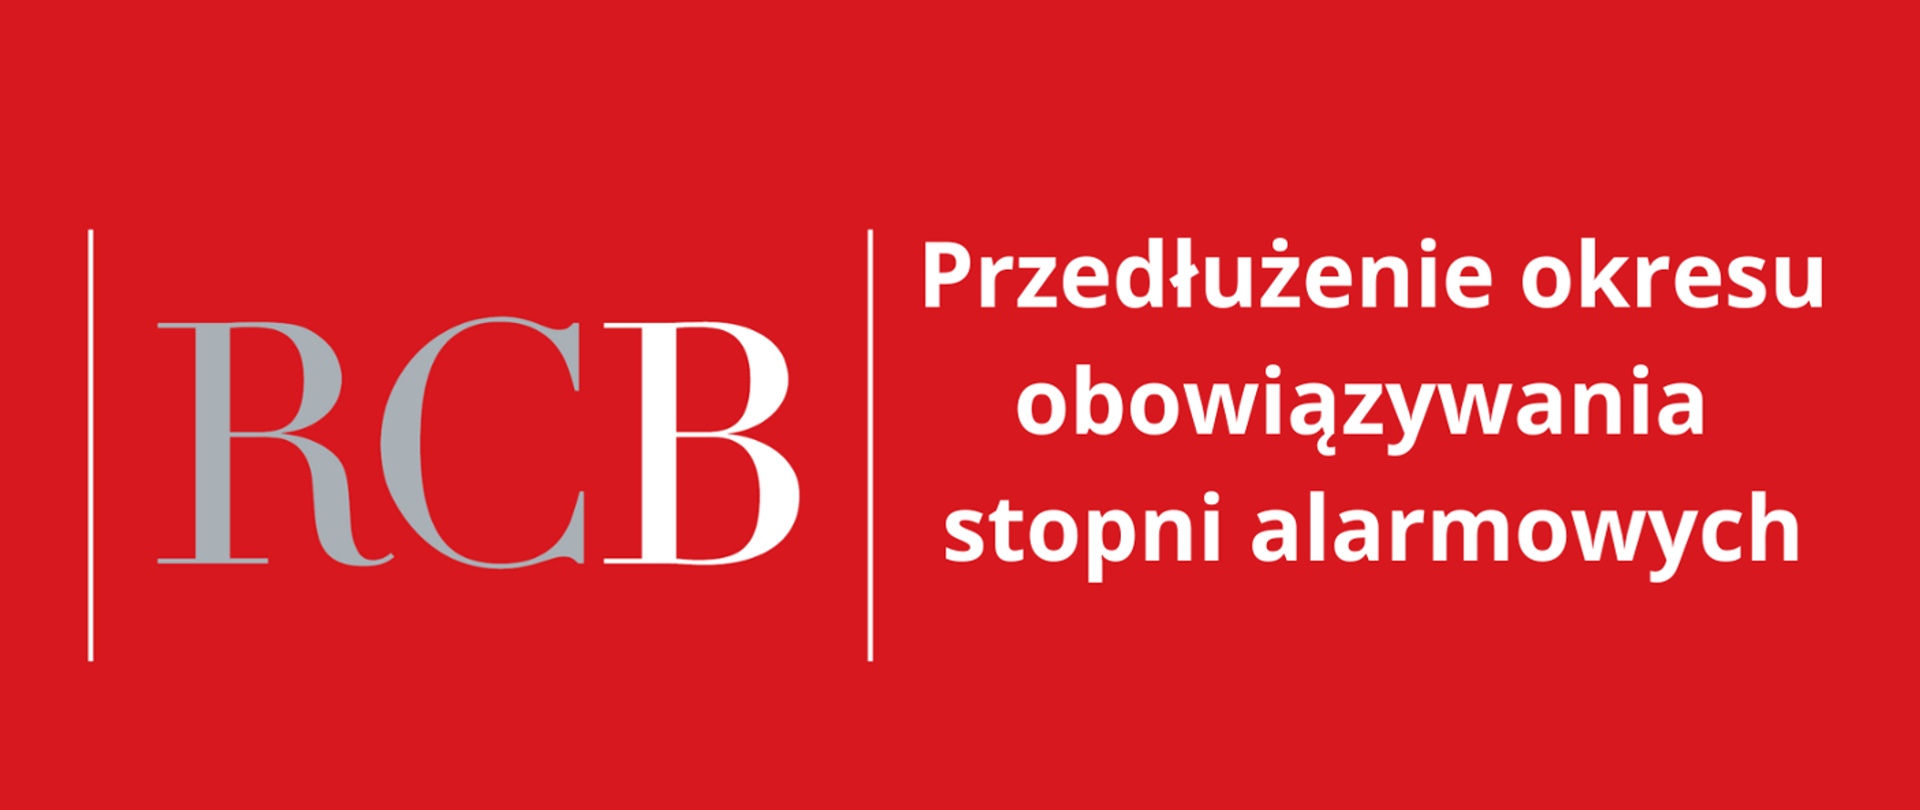 Na czerwonym tle z lewej strony logo RCB, po prawej tekst: Przedłużenie okresu obowiązywania stopni alarmowych